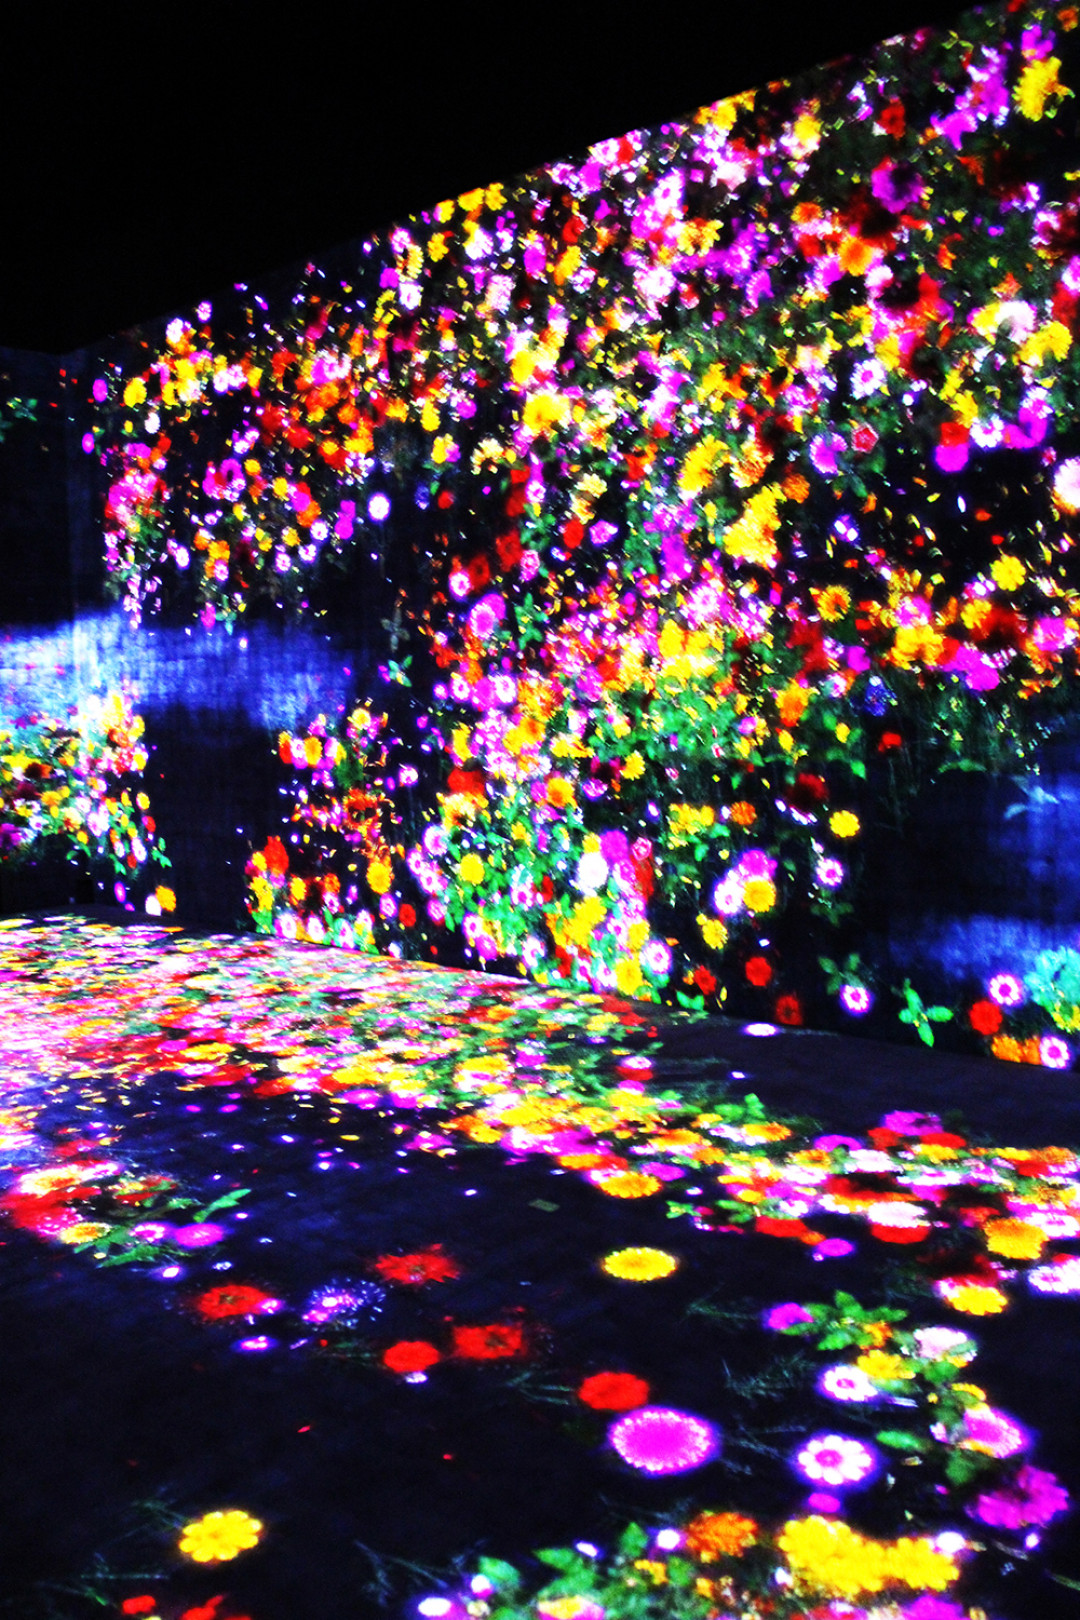 花の森、埋もれ失いそして生まれる/ Flower Forest: Lost, Immersed and Reborn teamLab, 2017, Interactive Digital Installation, Endless, Sound: Hideaki Takahashi